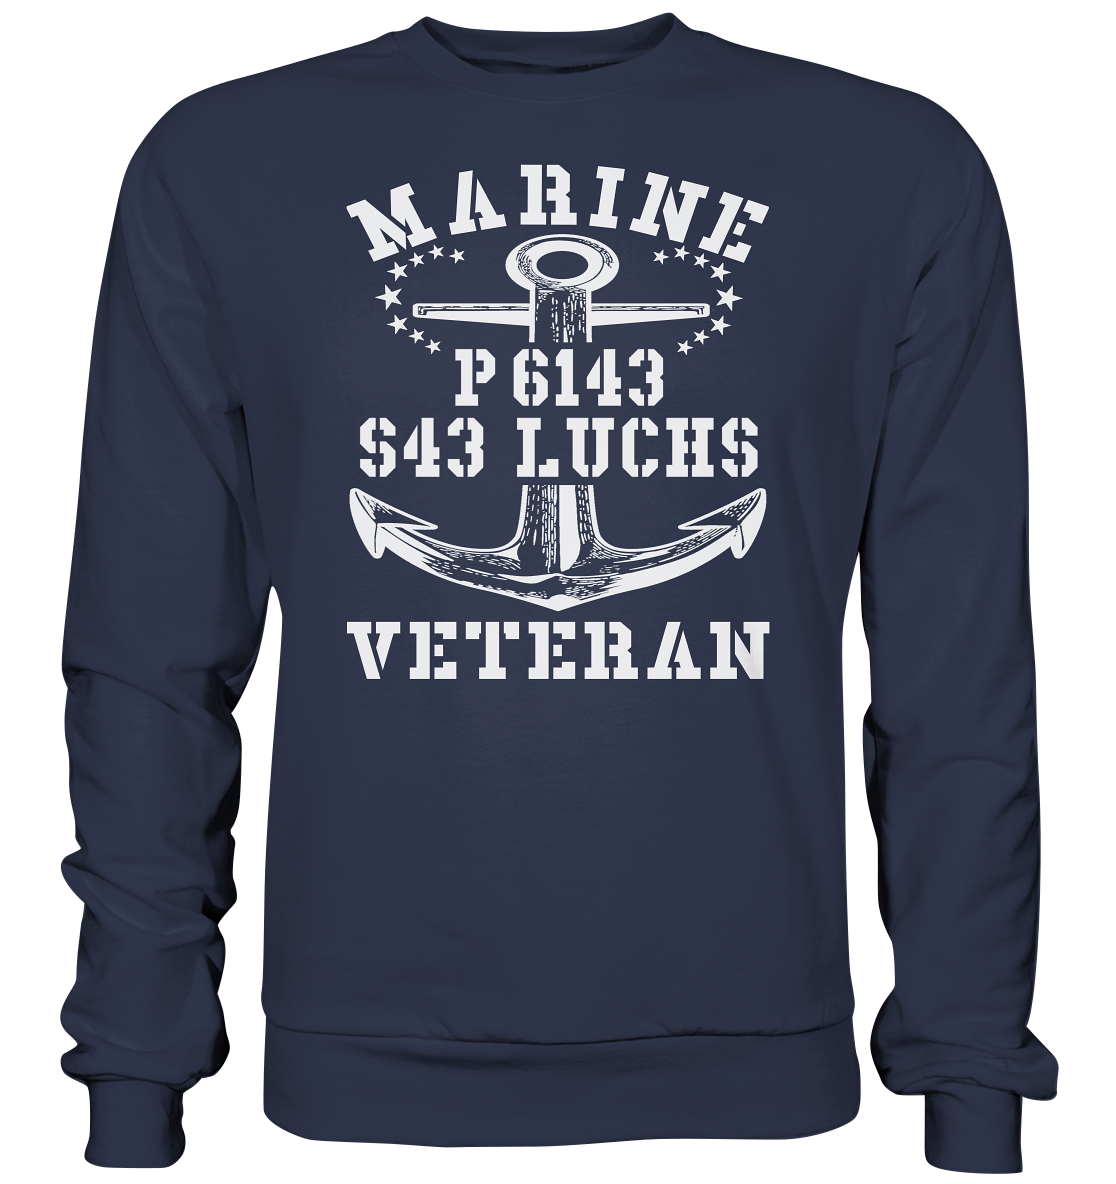 P6143 S43 LUCHS Marine Veteran - Premium Sweatshirt